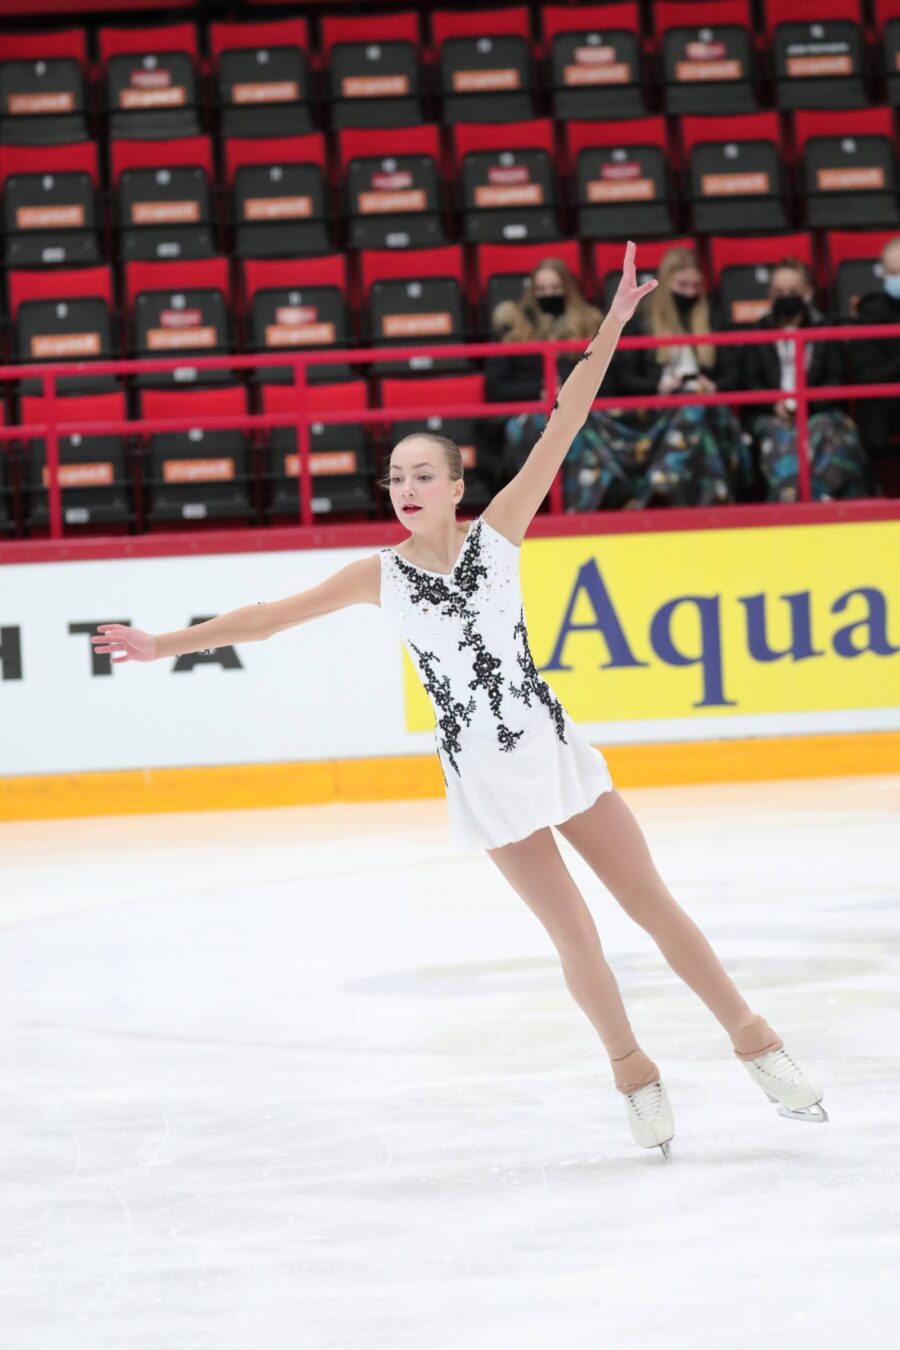 Espoon Jäätaitureiden Petra Lahti sai juniorityttöjen SM-hopeaa pisteillä 151,83.